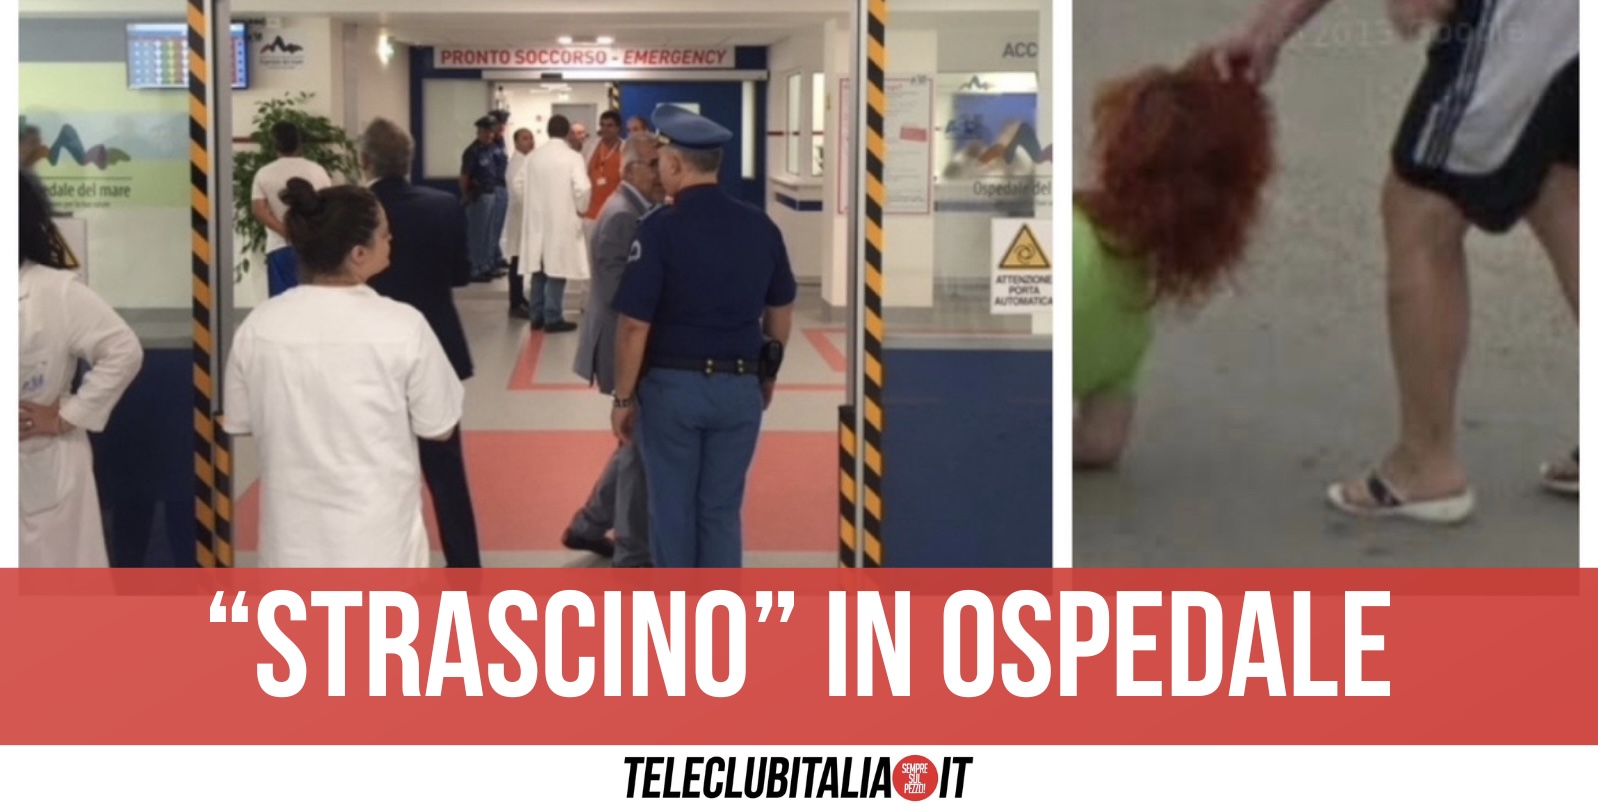 Napoli, non vuole aspettare: afferra l’infermiera per i capelli e la trascina per diversi metri